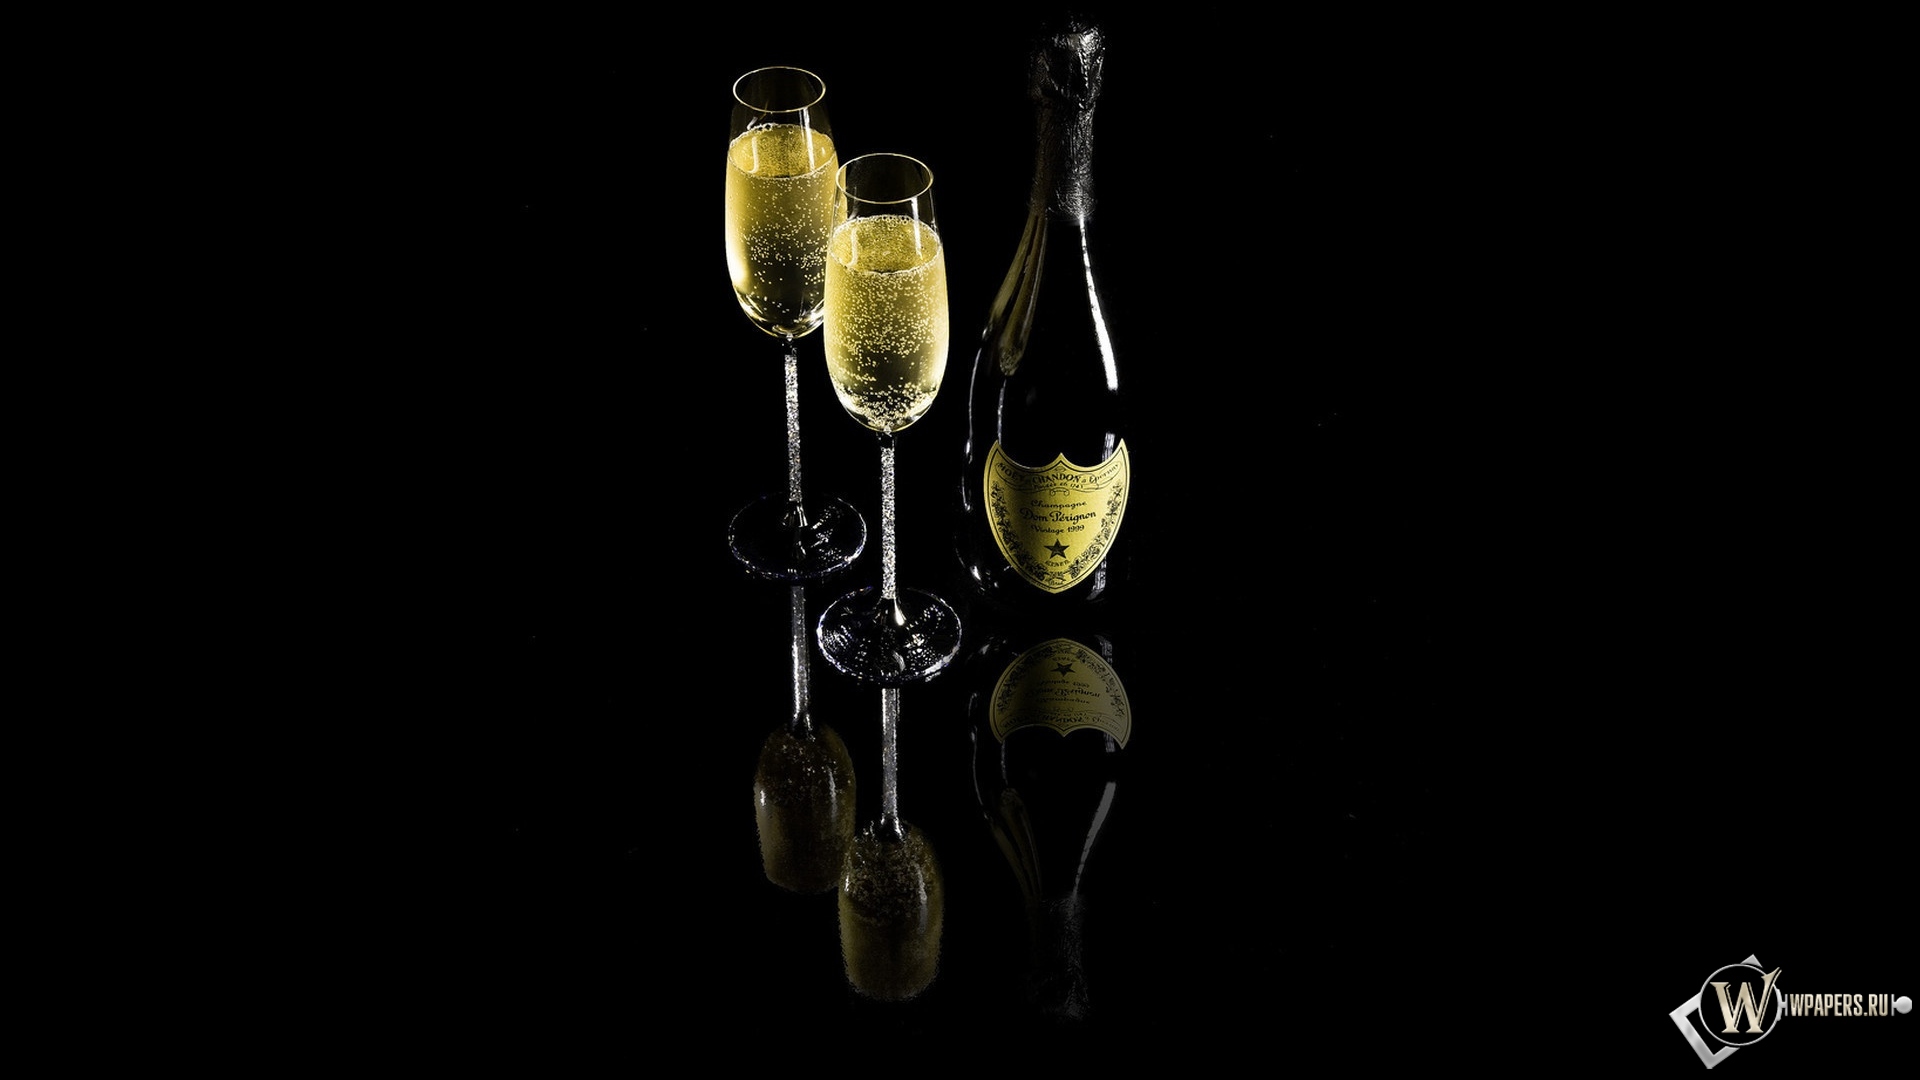 Шампанское Dom Perignon 1920x1080